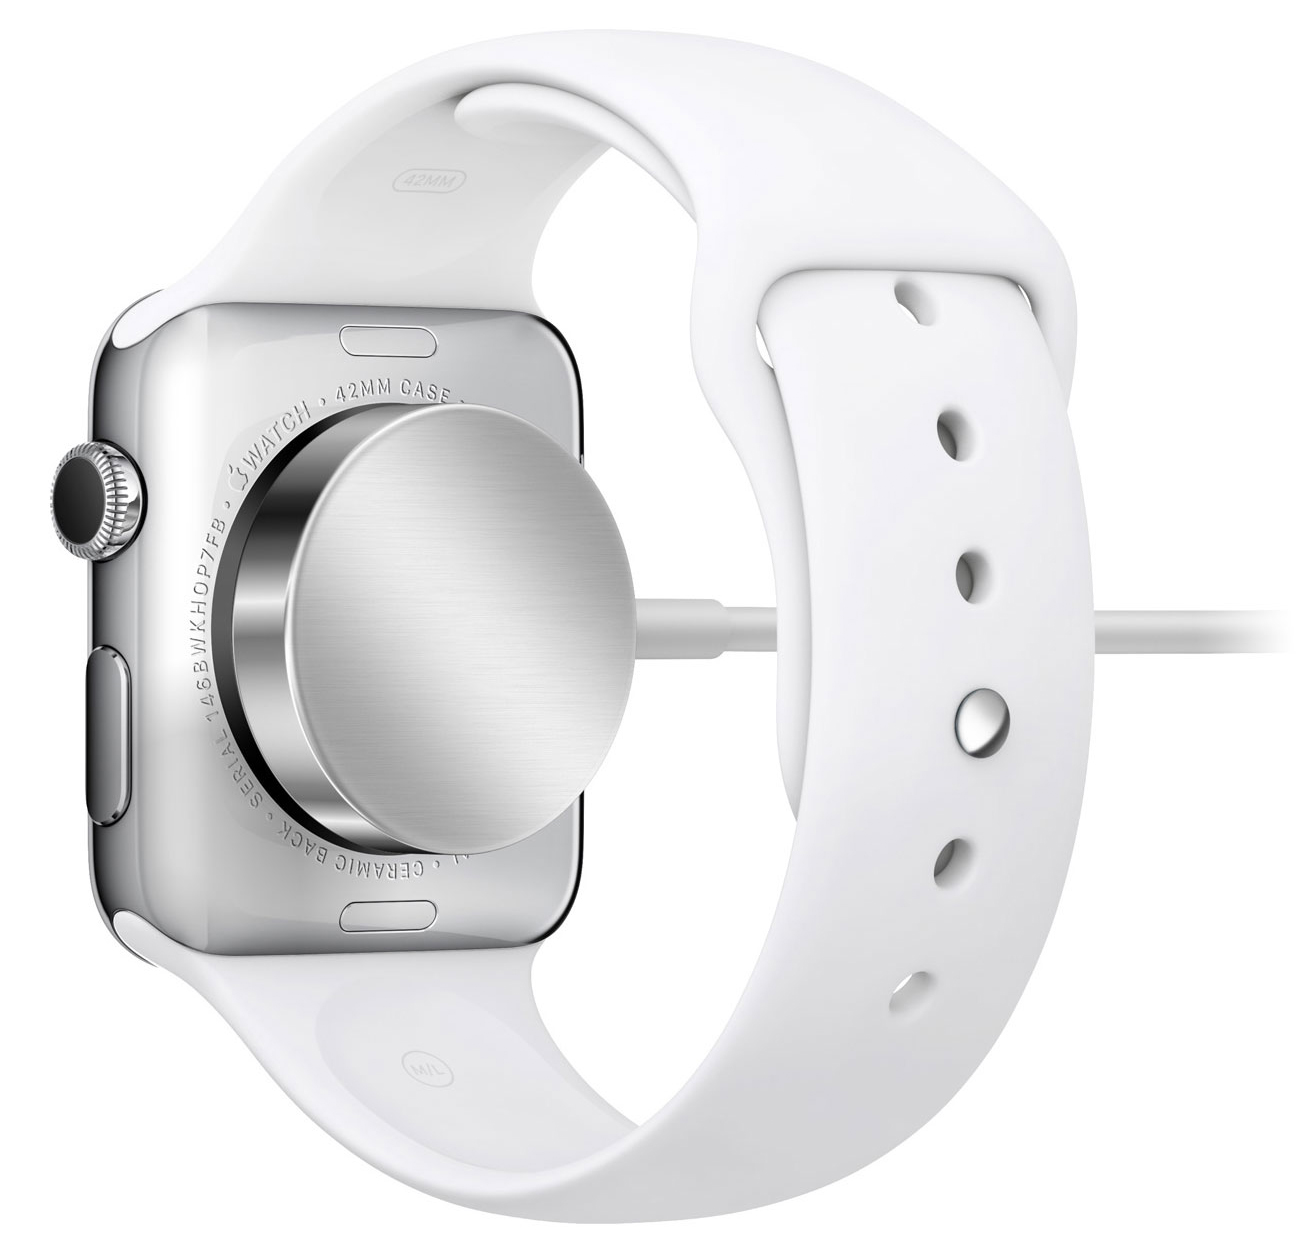 Cargando el Apple Watch inalámbricamente